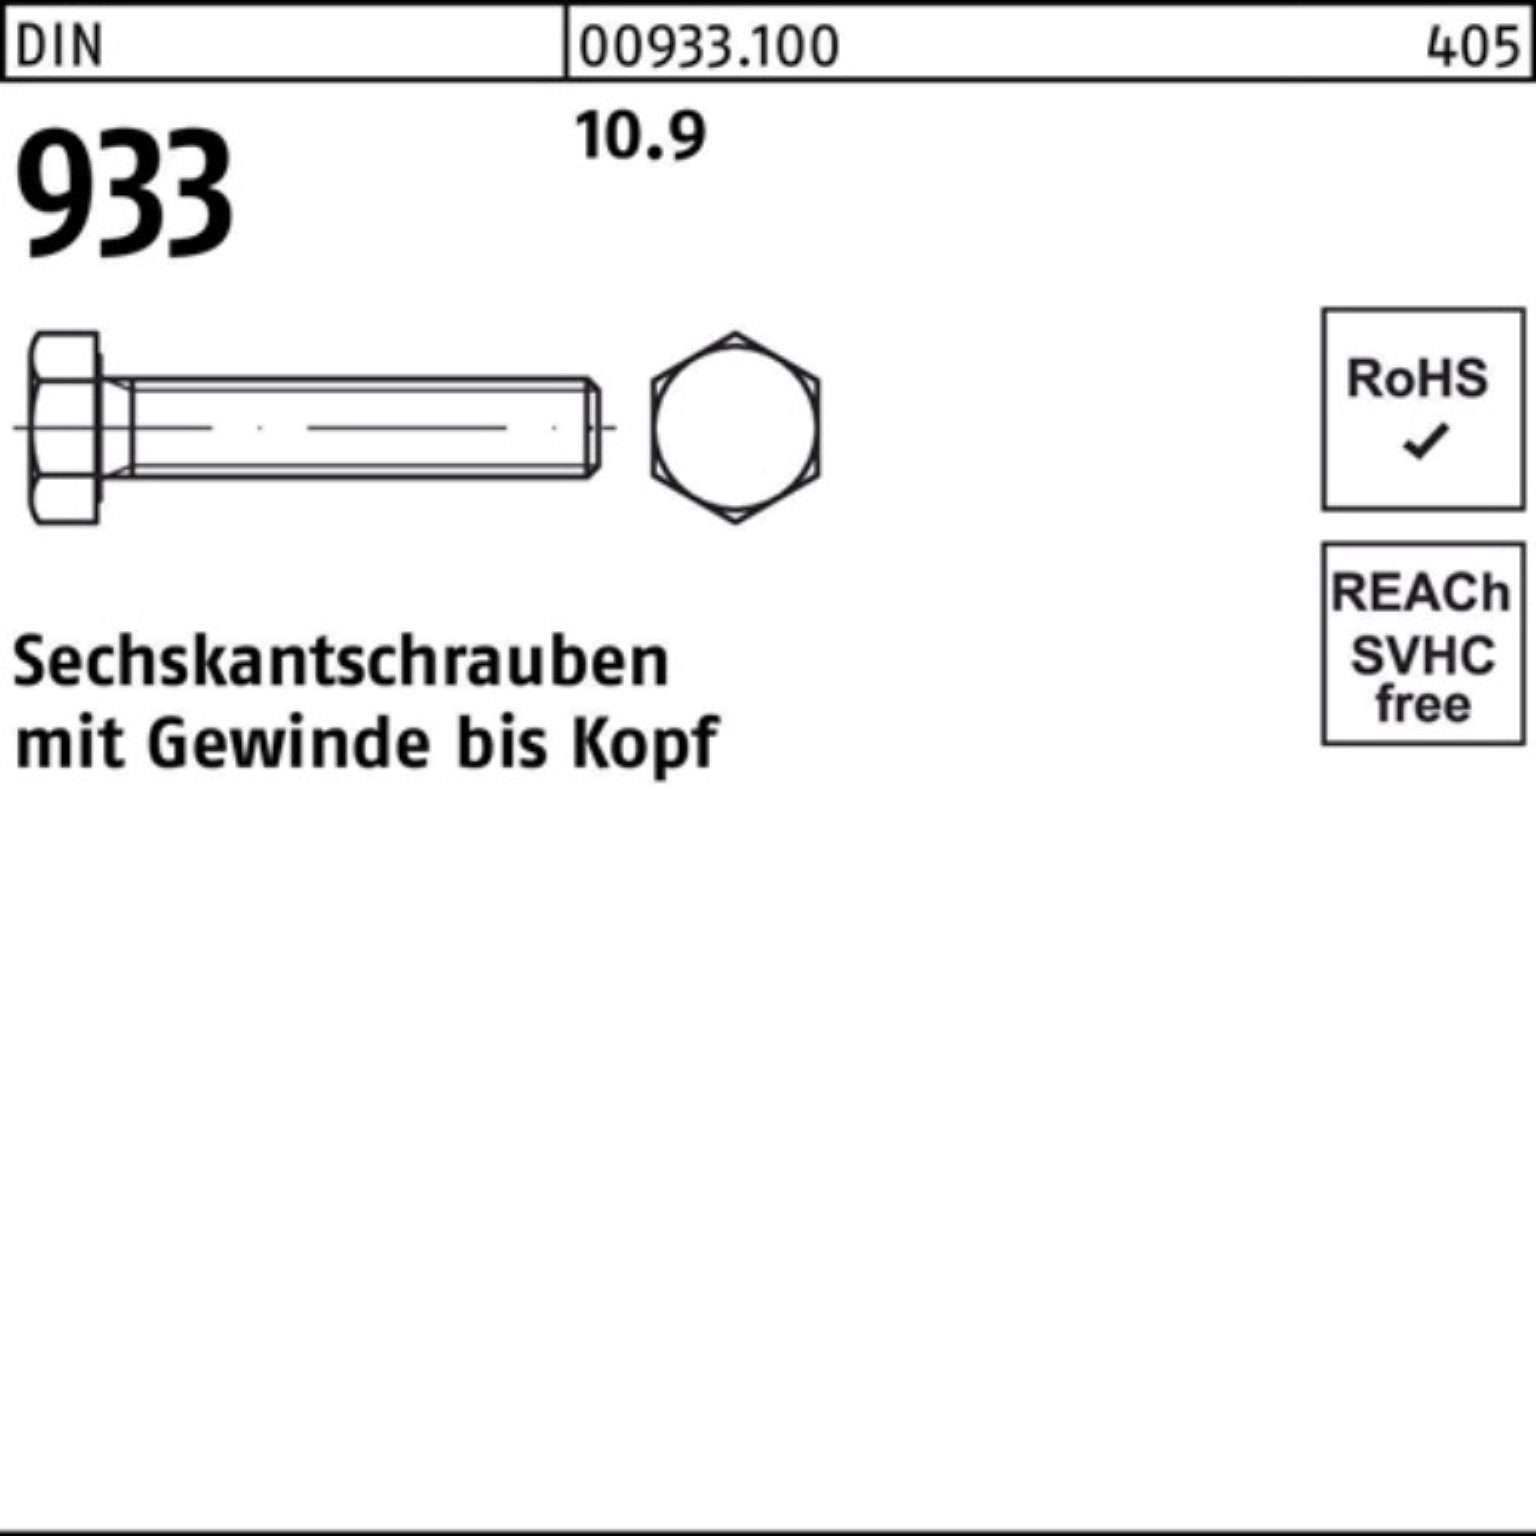 Reyher Sechskantschraube Sechskantschraube 933 1 Pack VG 100er Stück M30x DIN 933 170 10.9 DIN